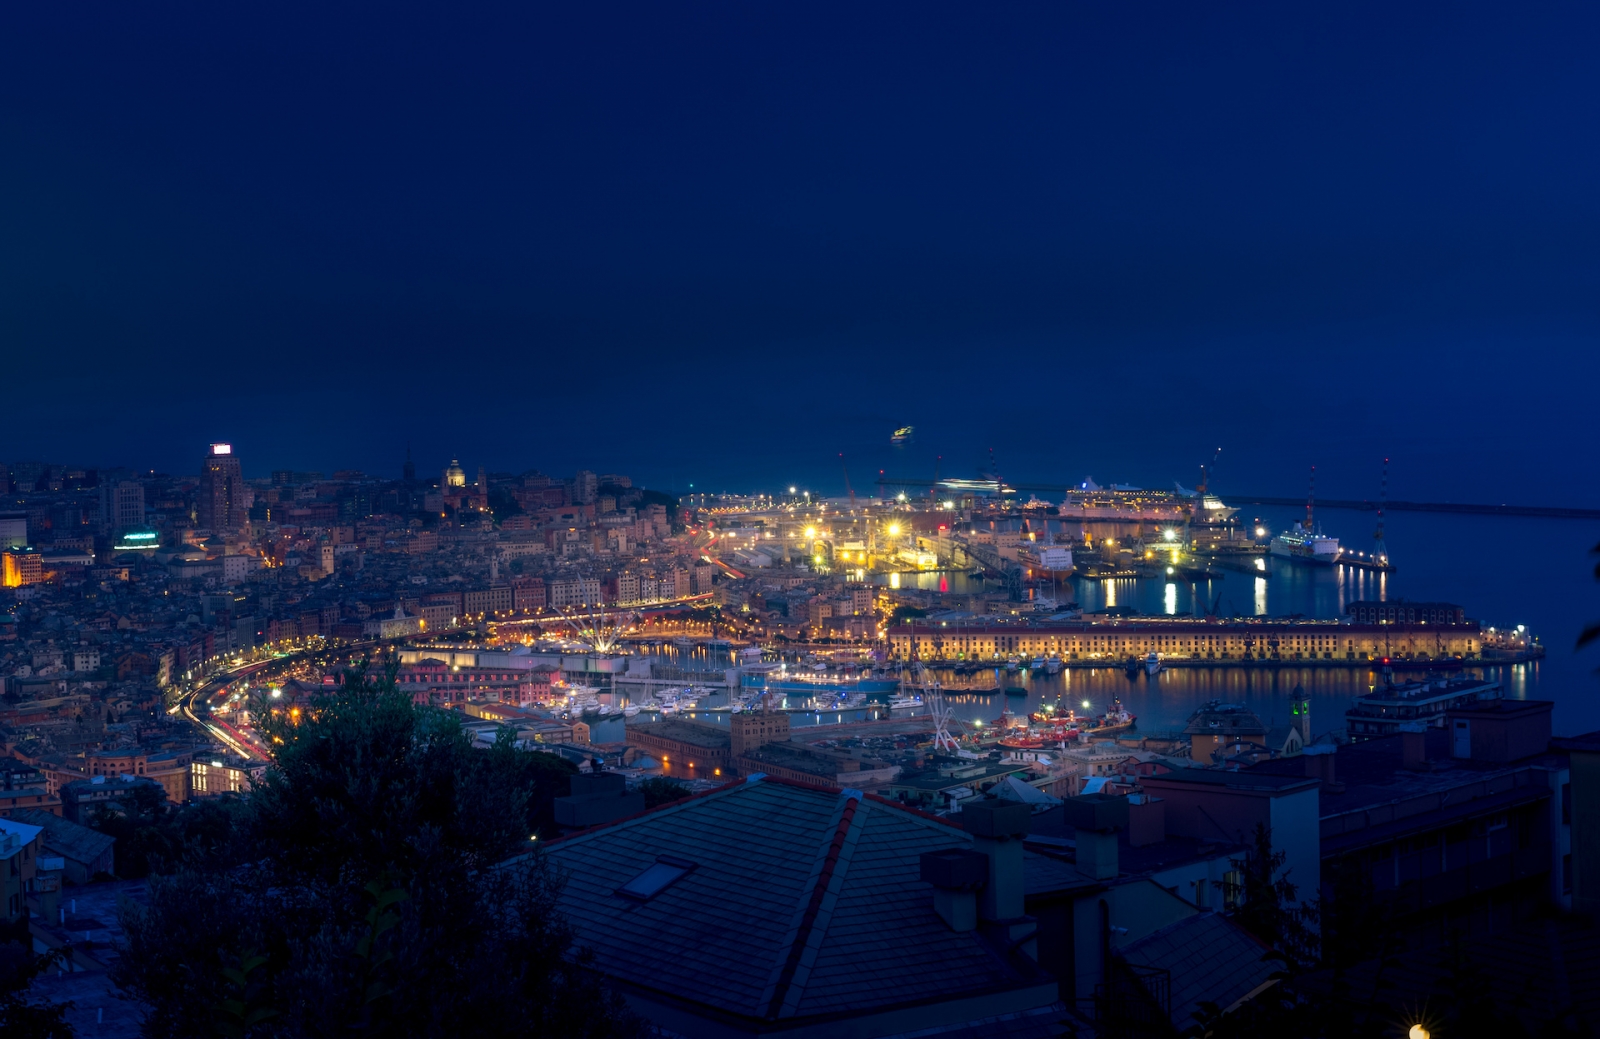 Paesaggio urbano notturno di Genova con il vecchio porto, le navi da crociera, il mare e le gru portuali sullo sfondo